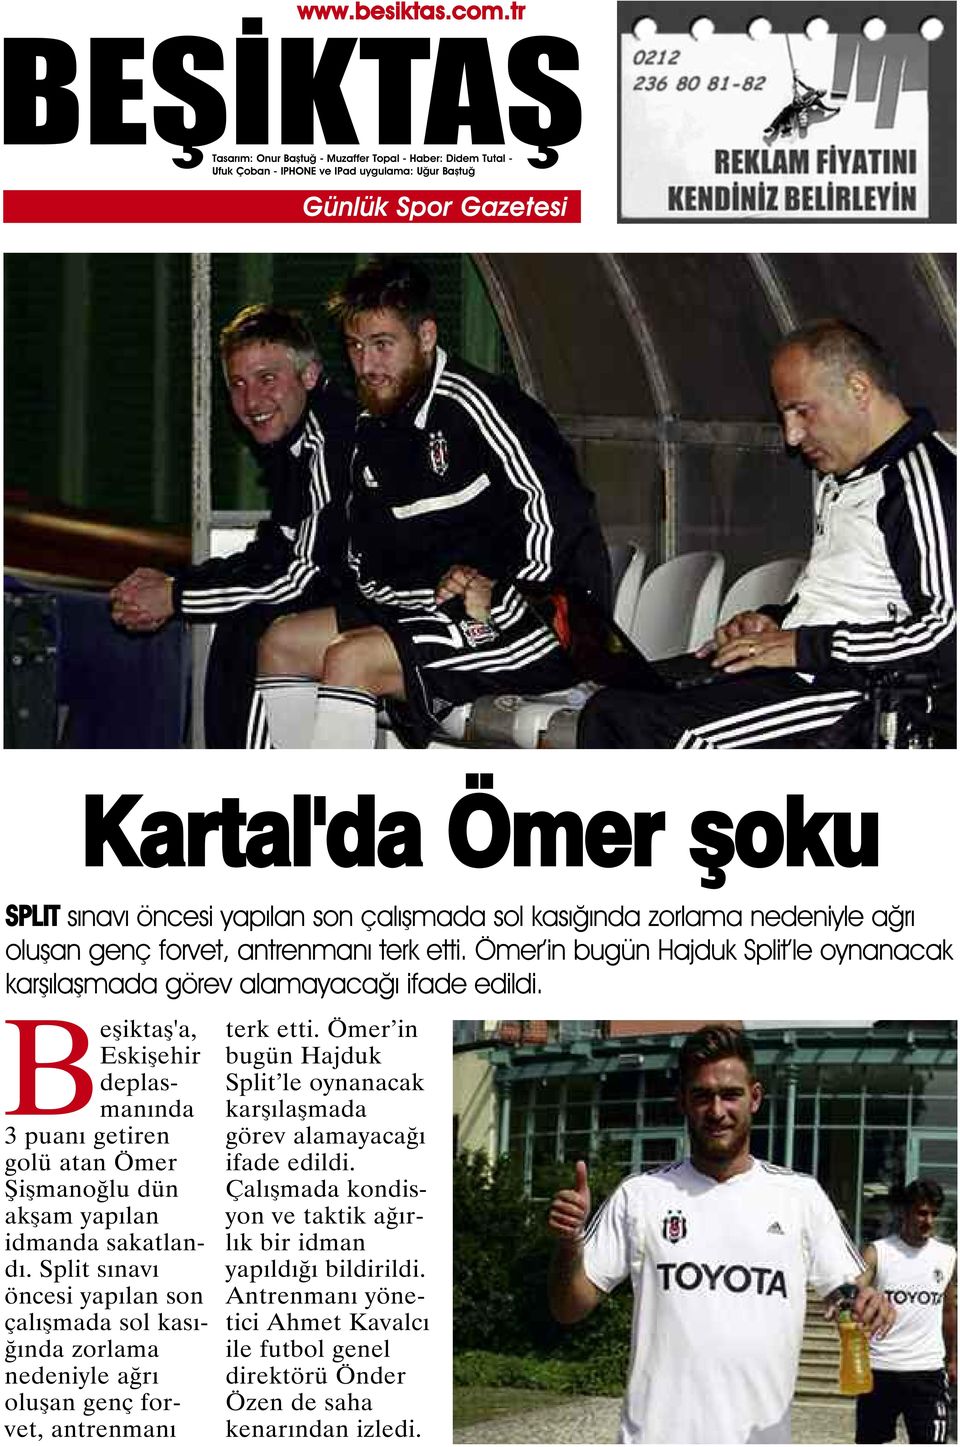 Beşiktaş'a, Eskişehir deplasmanında 3 puanı getiren golü atan Ömer Şişmanoğlu dün akşam yapılan idmanda sakatlandı.